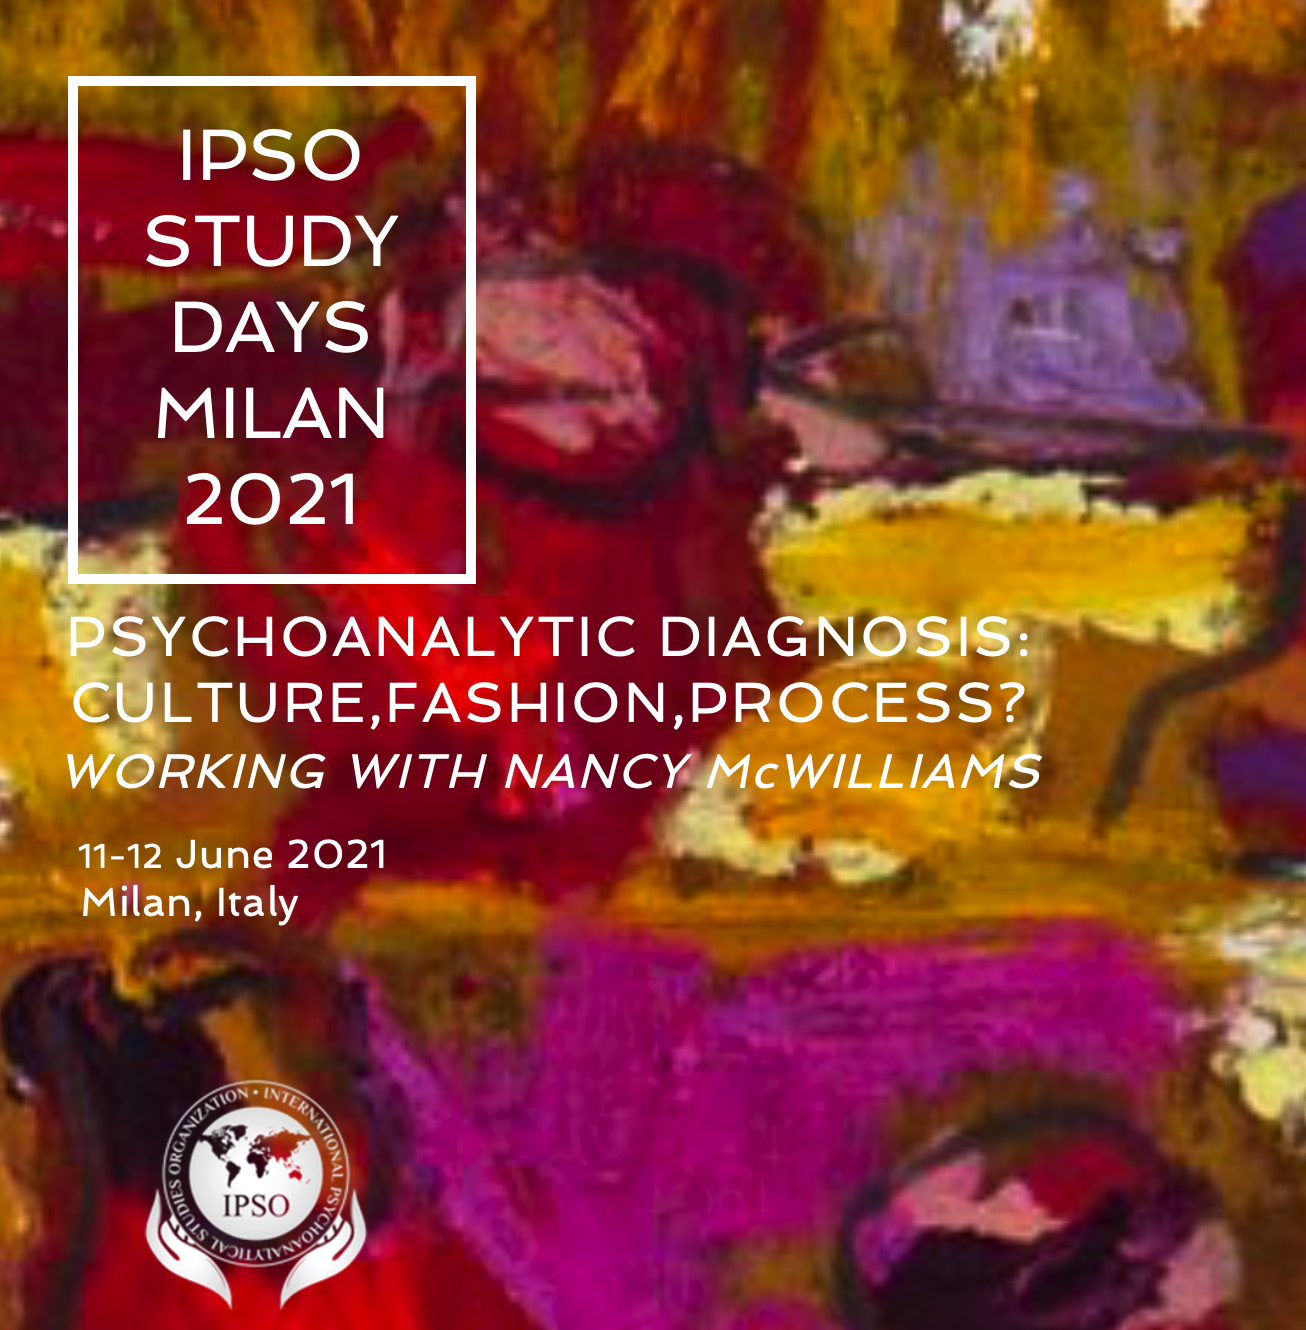 Journées d'études IPSO Milan 2021